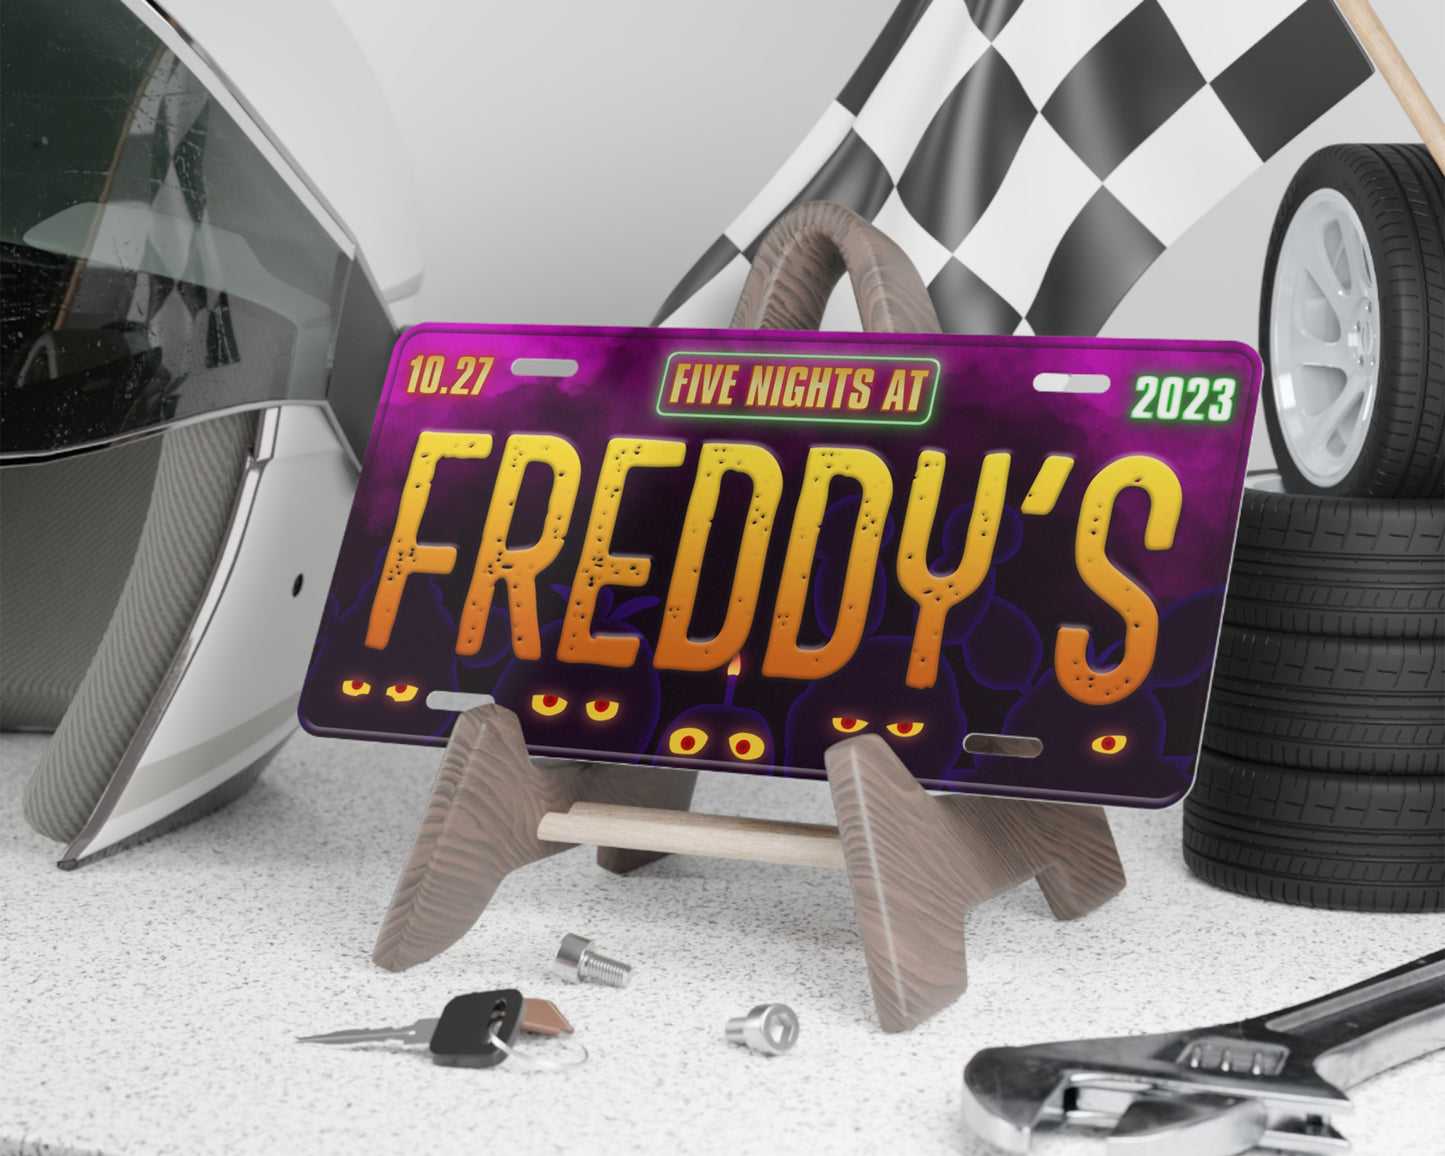 Freddy's (2023) movie license plate